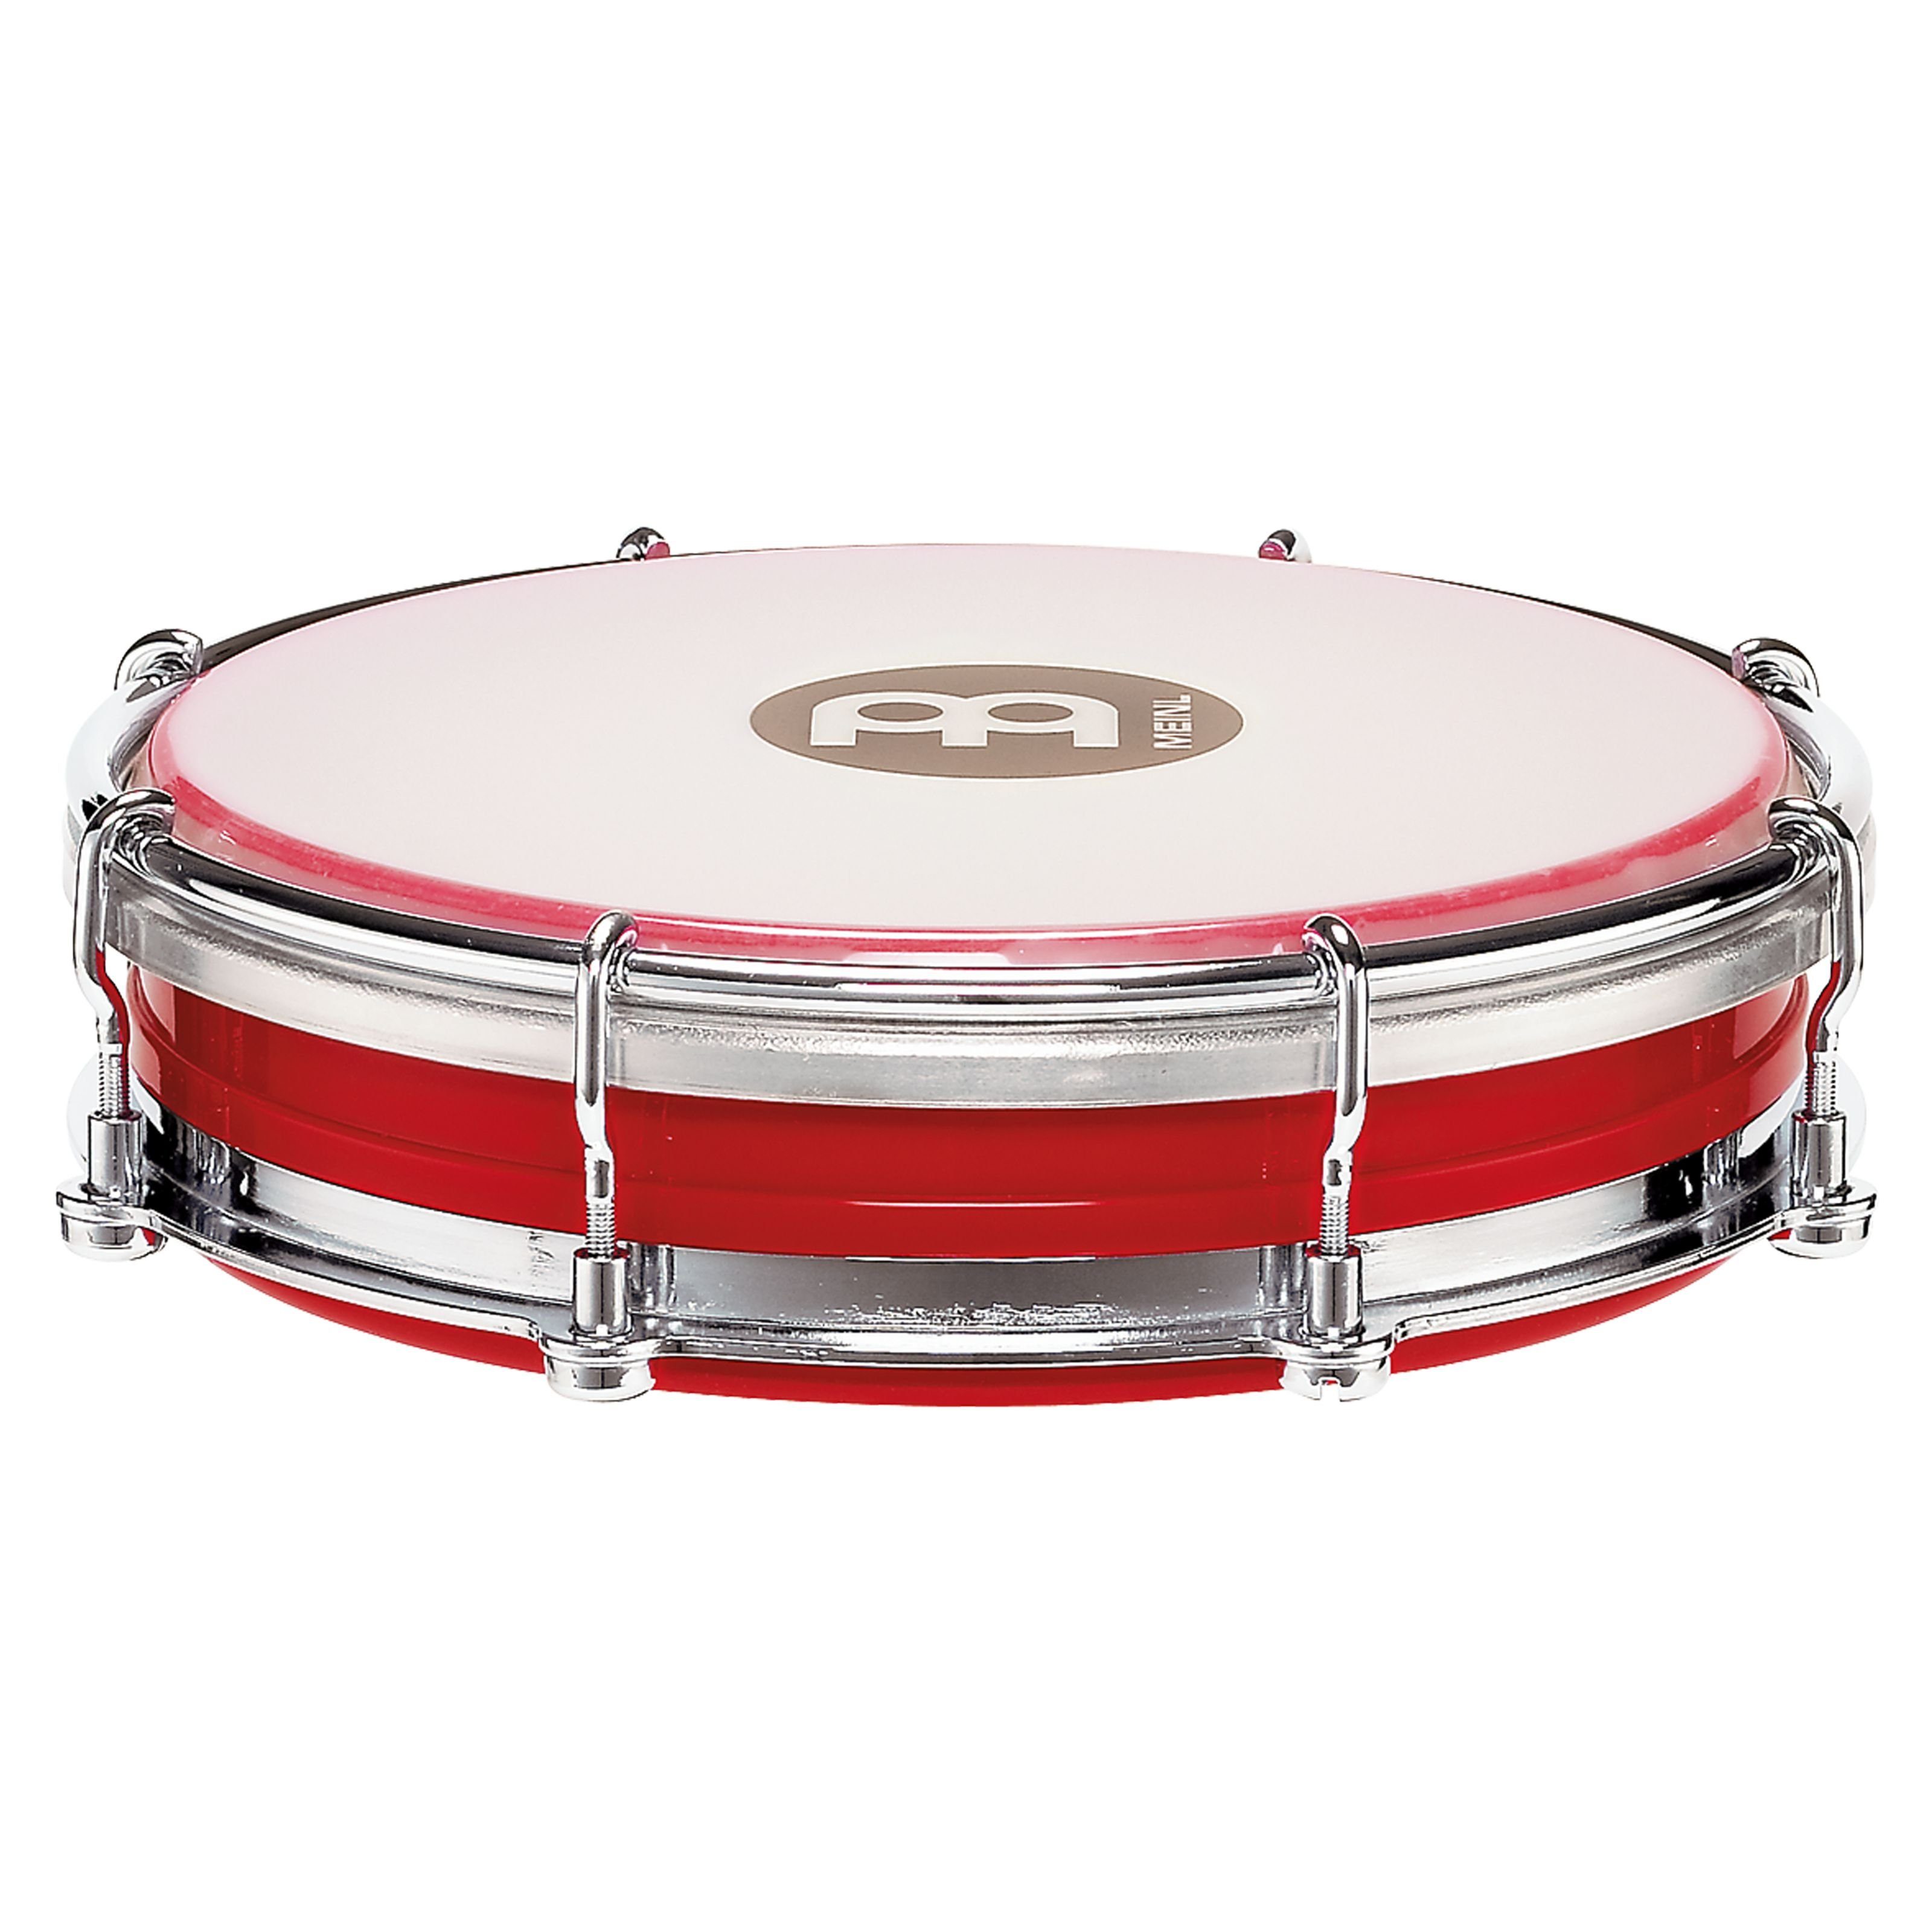 Meinl Percussion Tambourine,TBR06ABS-R Tamborim 6" Red, TBR06ABS-R Tamborim 6" Red - Tambourine